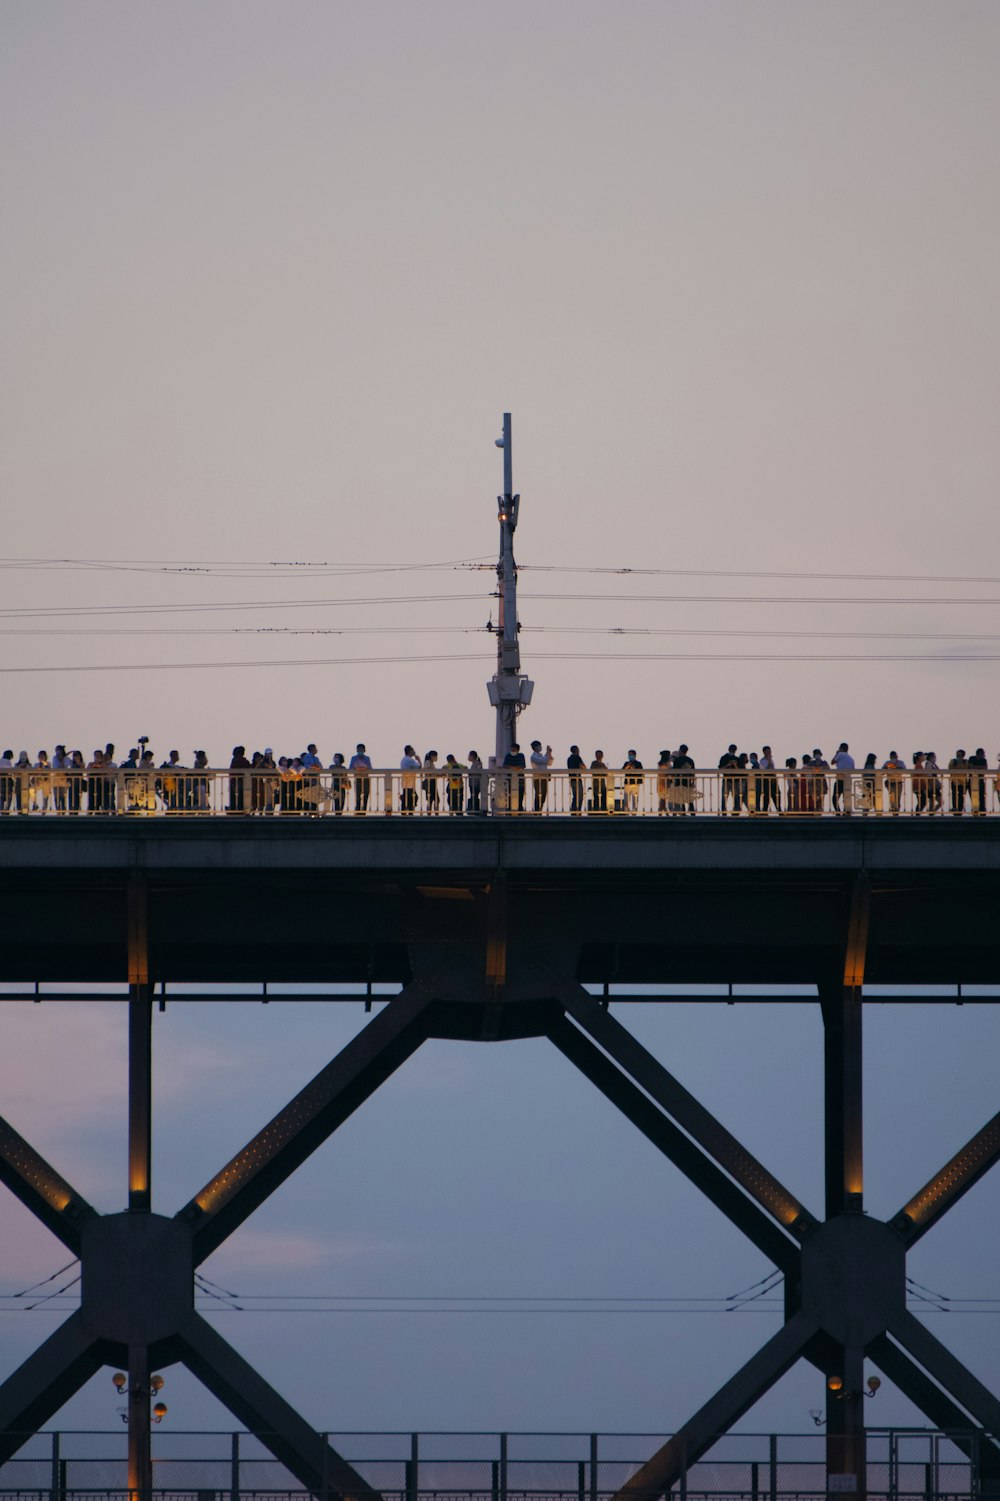 Eine Gruppe von Menschen, die auf einer Brücke stehen